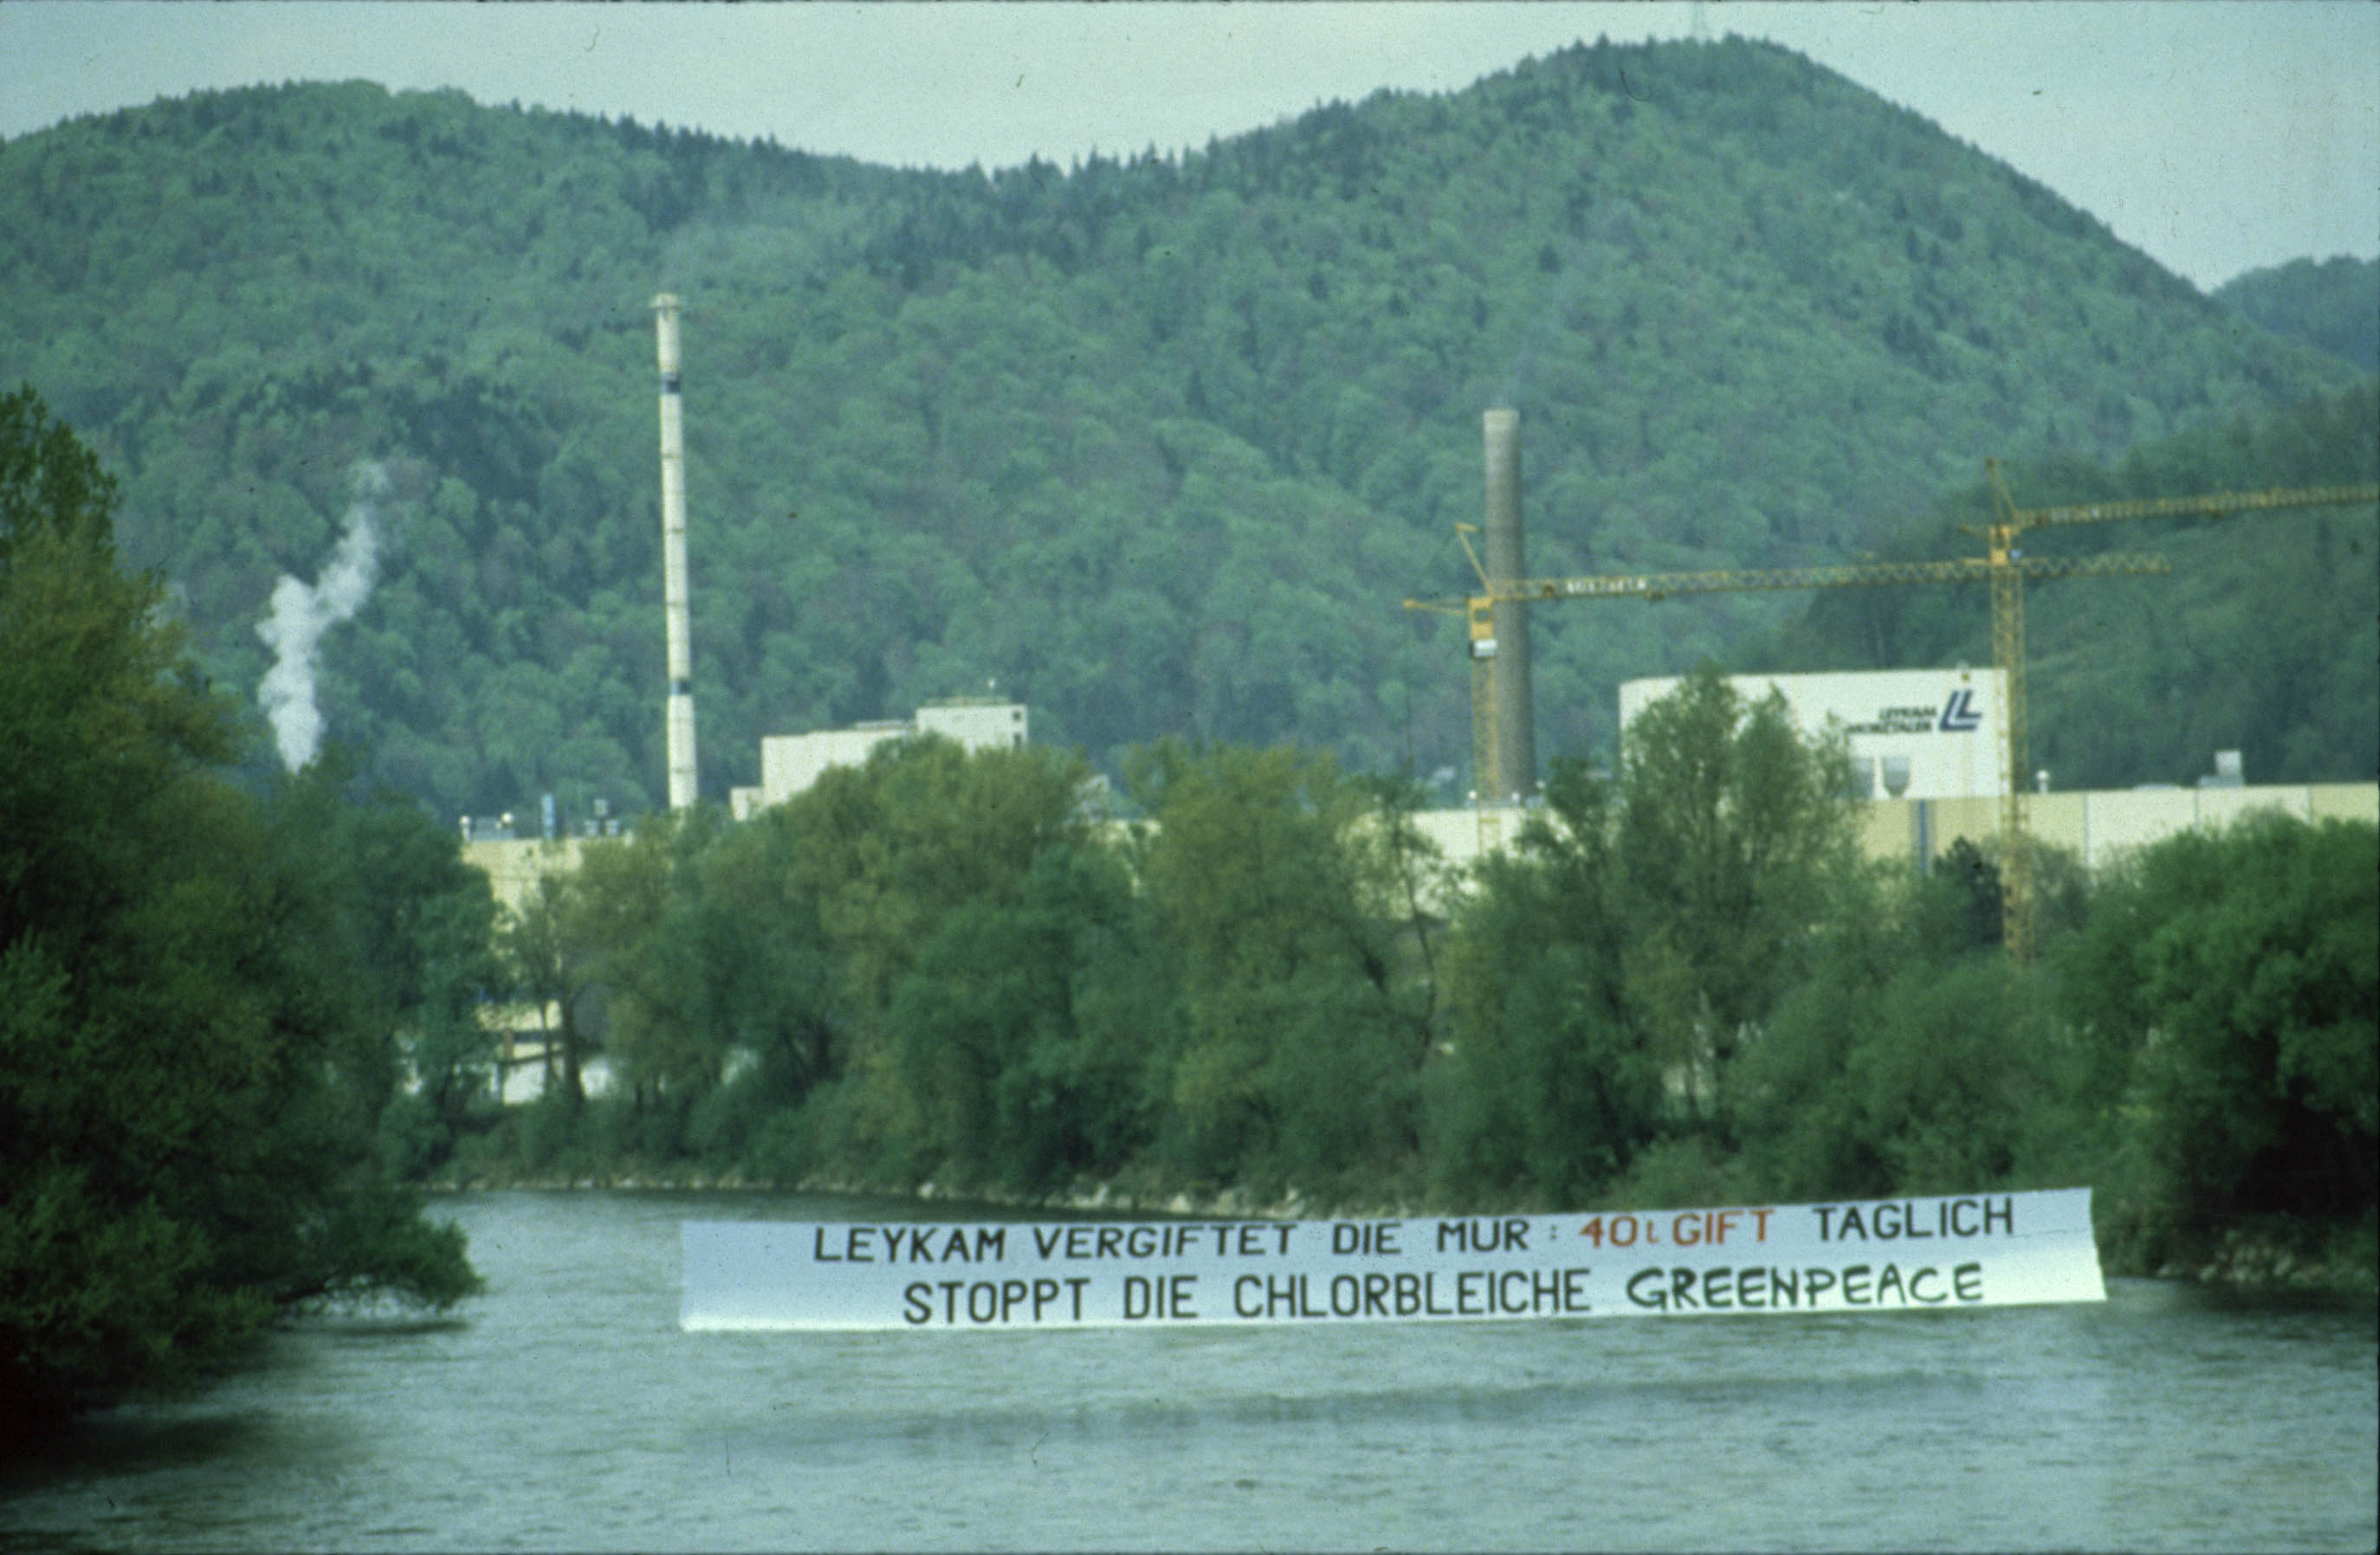 Archivaufnahme: Über die Mur ist ein Banner zum Stopp der Chlorbleiche gespannt